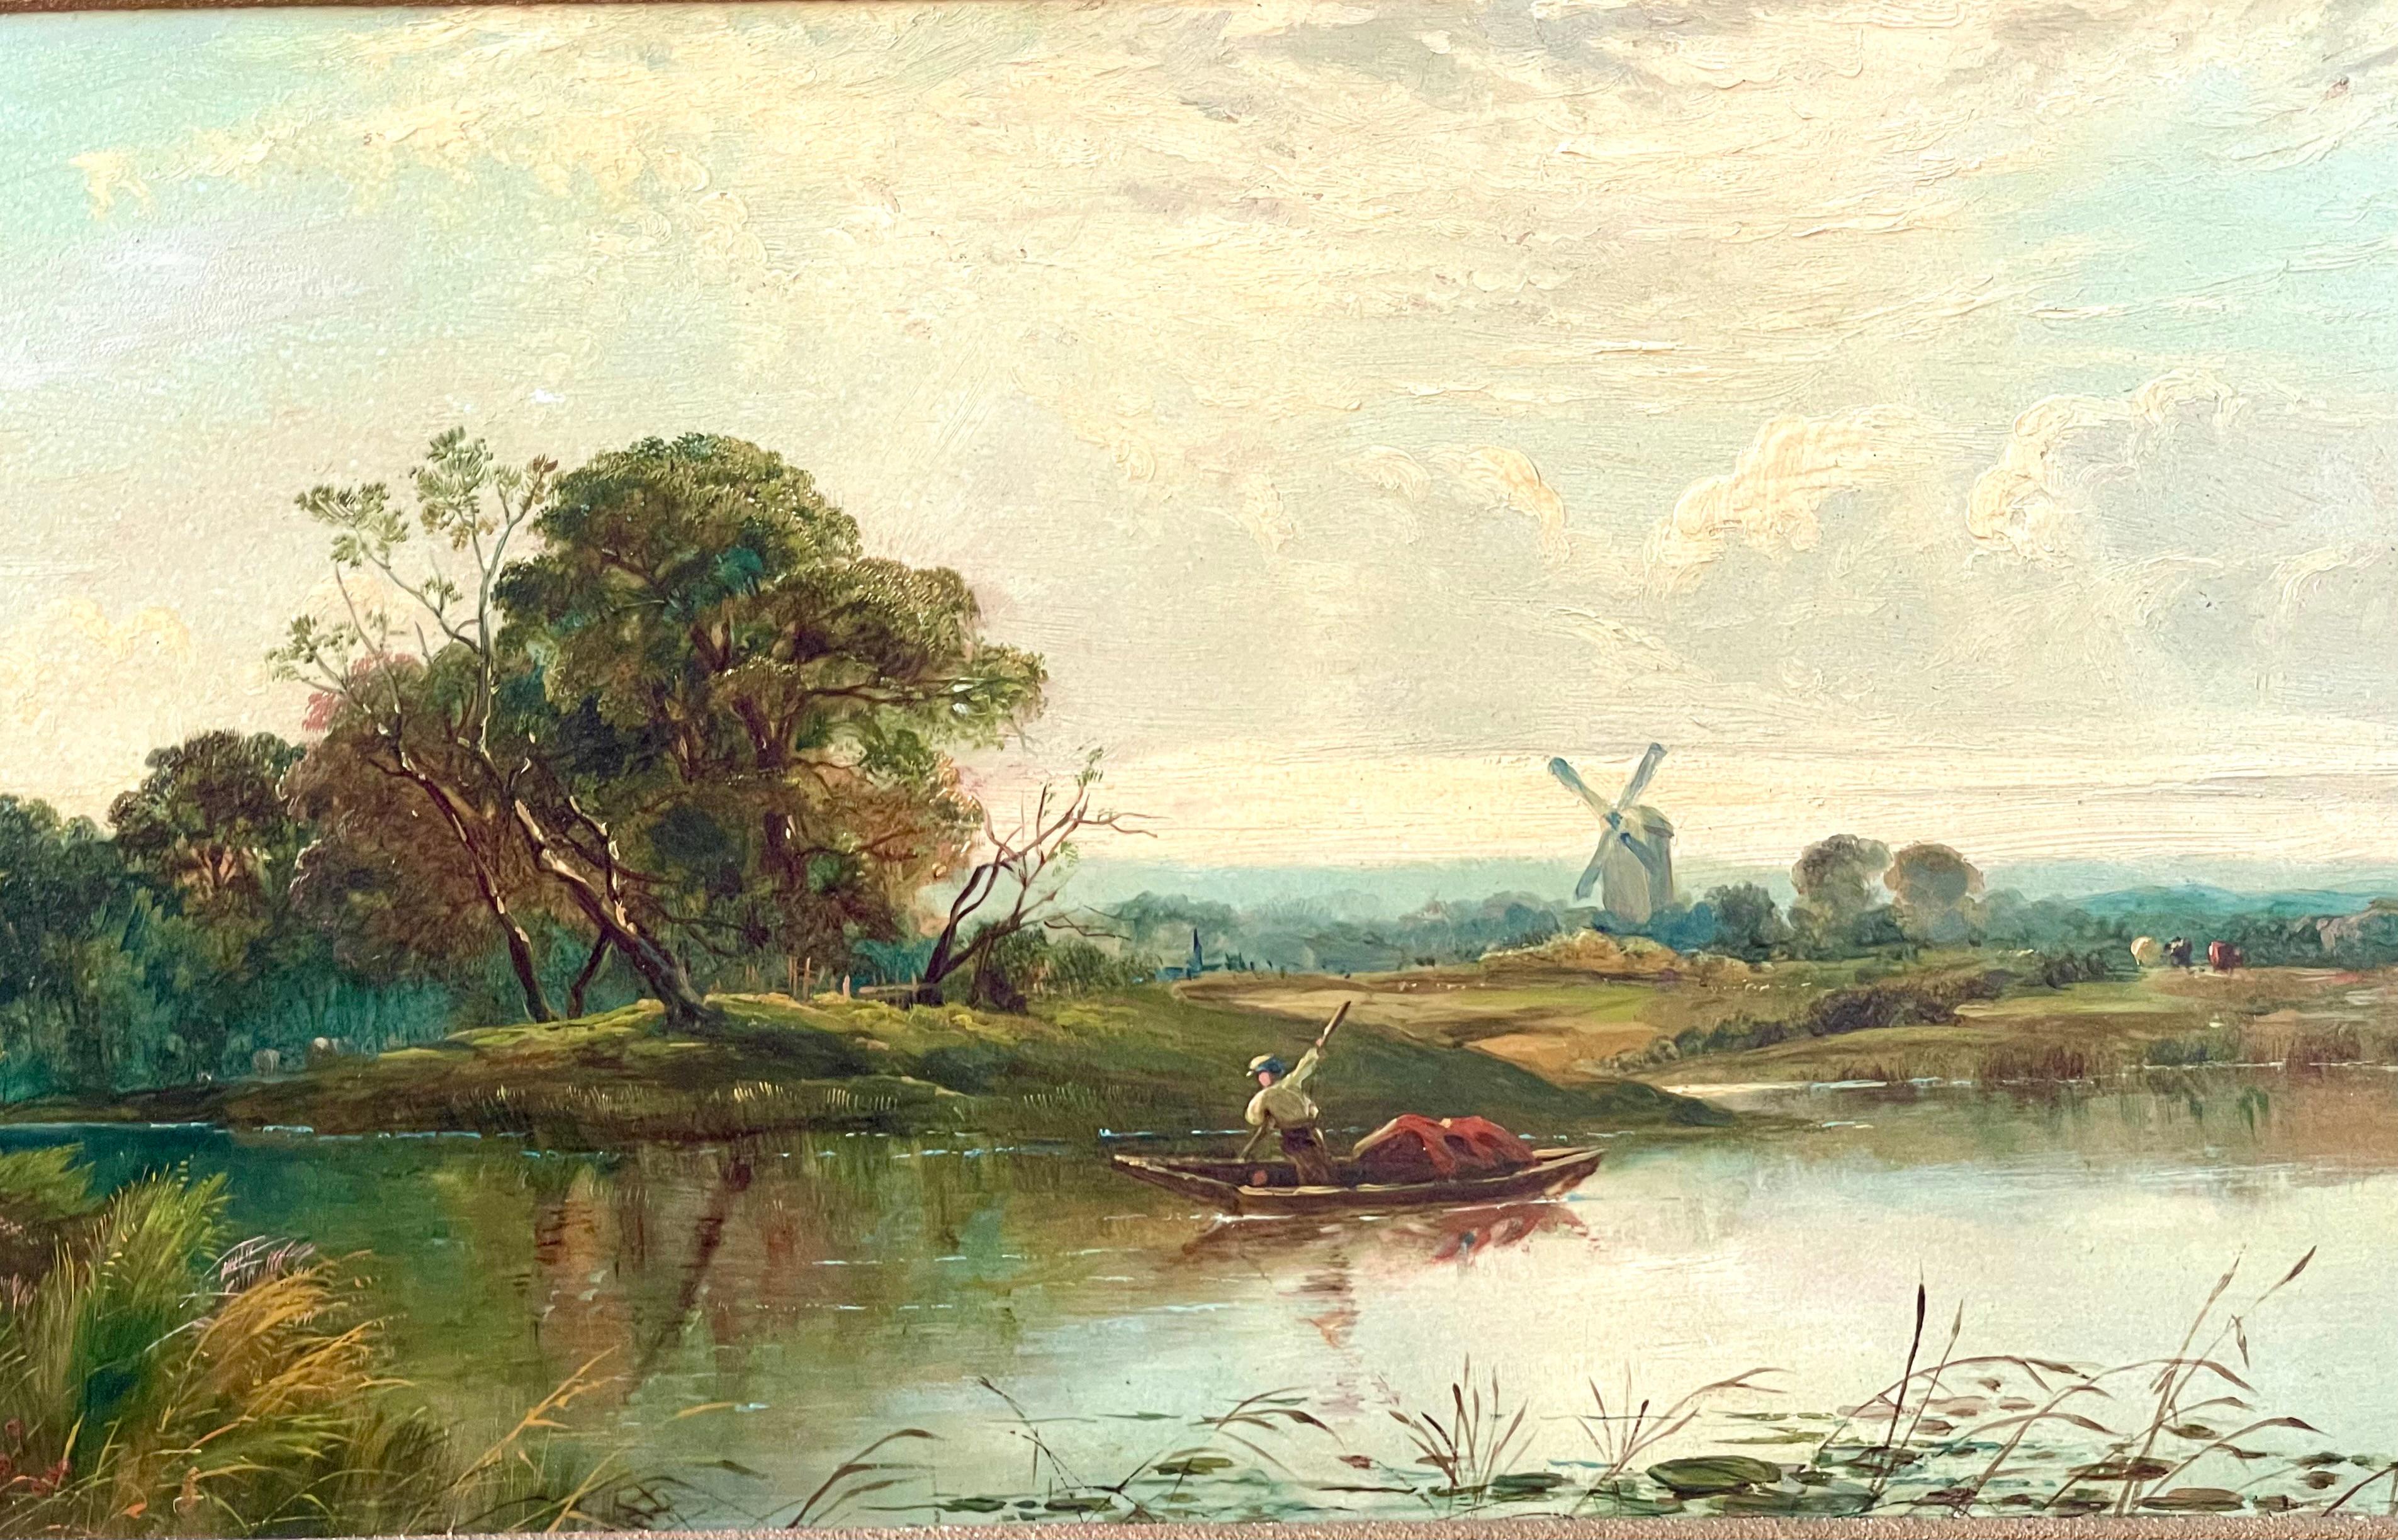 Suffolk-Landschaft mit Ferryman – Painting von Alfred de Breanski Sr.